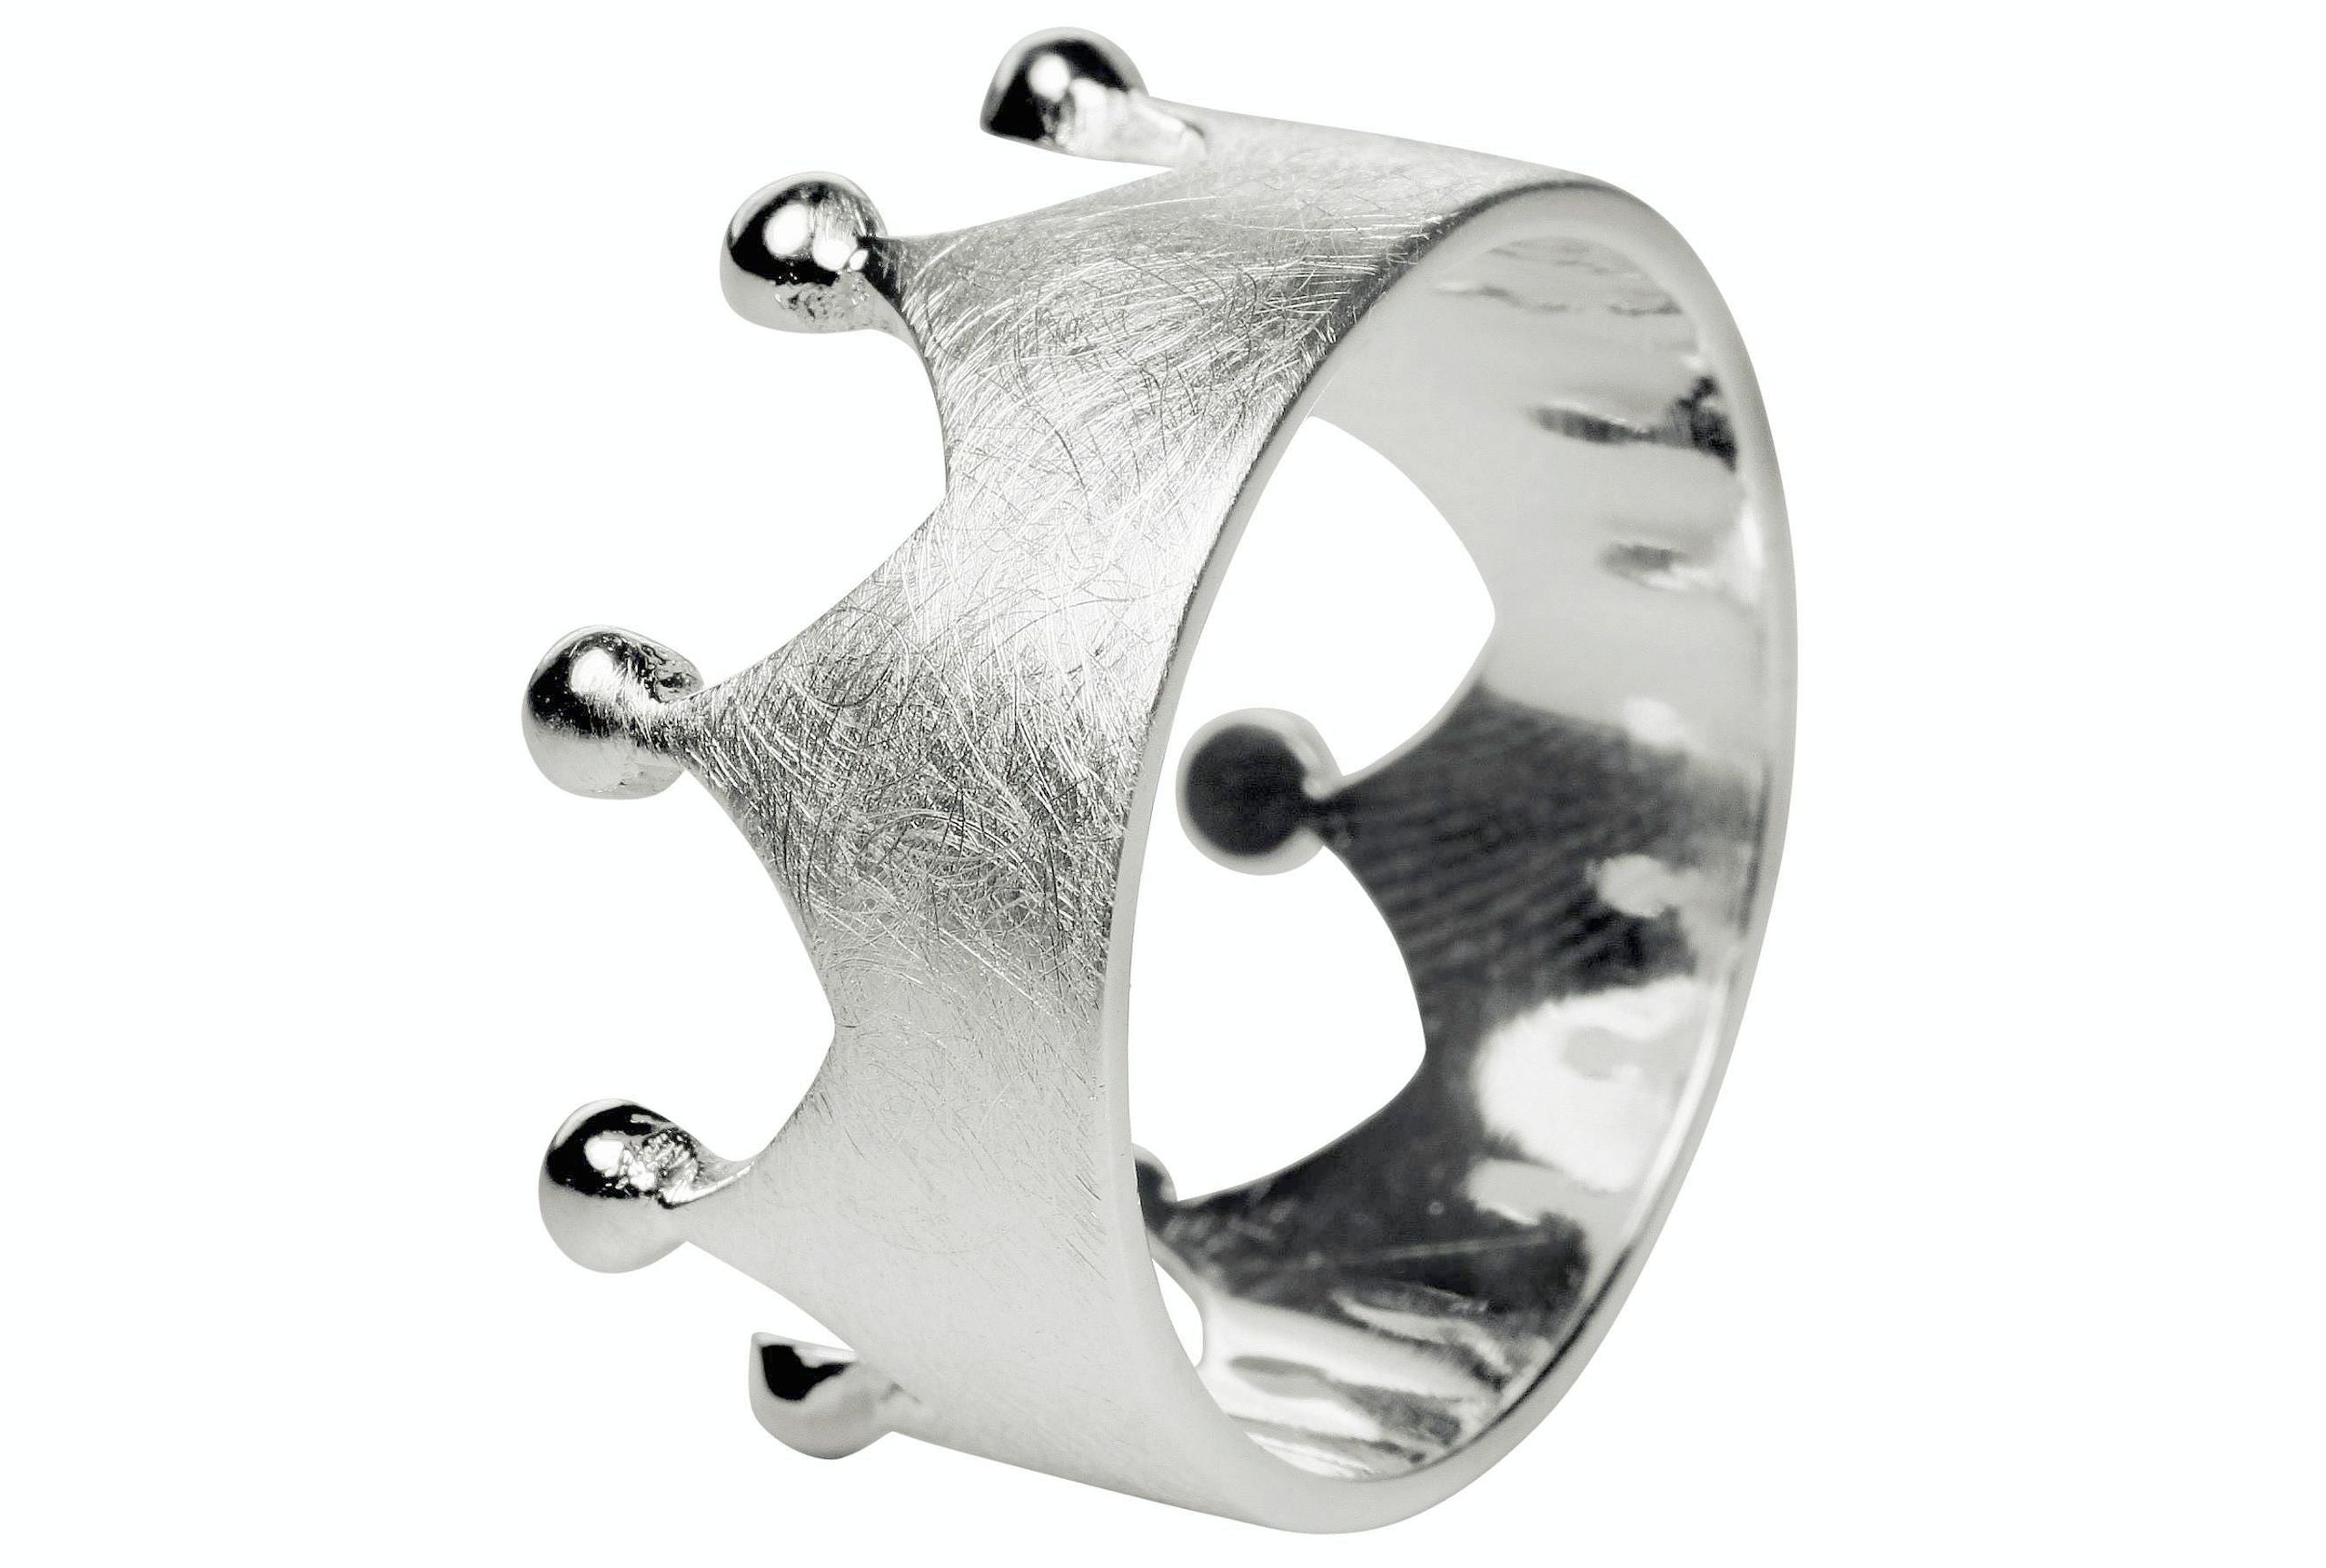 Silberner Ring im Kronendesign mit acht Zacken in den Größen 64 bis 70. Der Ring ist innen glänzend und außen gebürstet. 